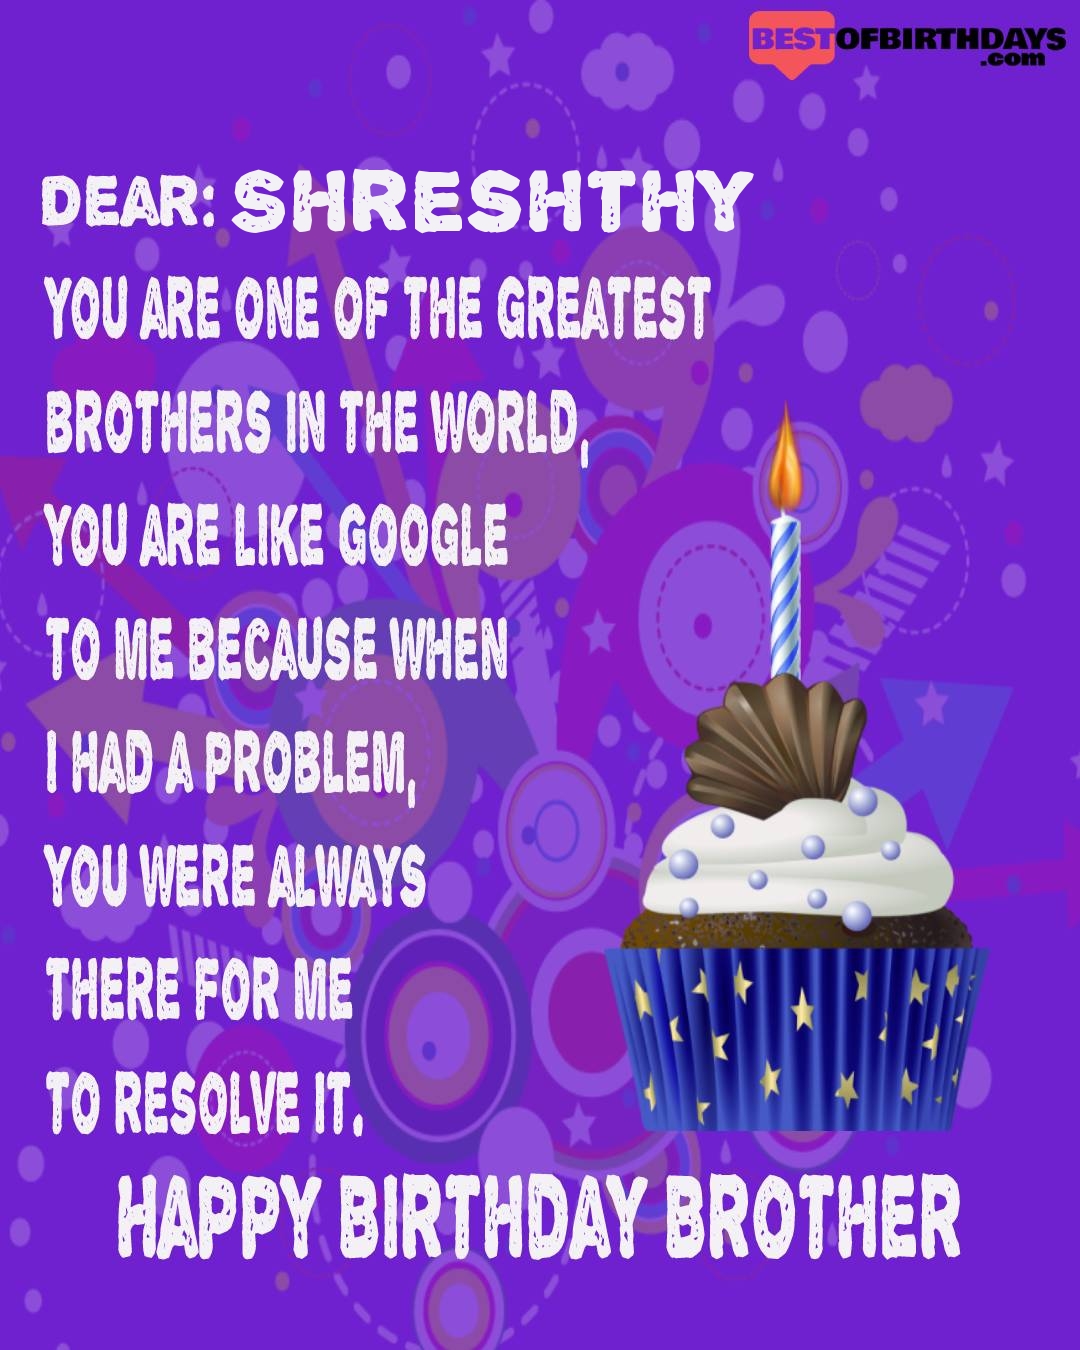 Happy birthday shreshthy bhai brother bro